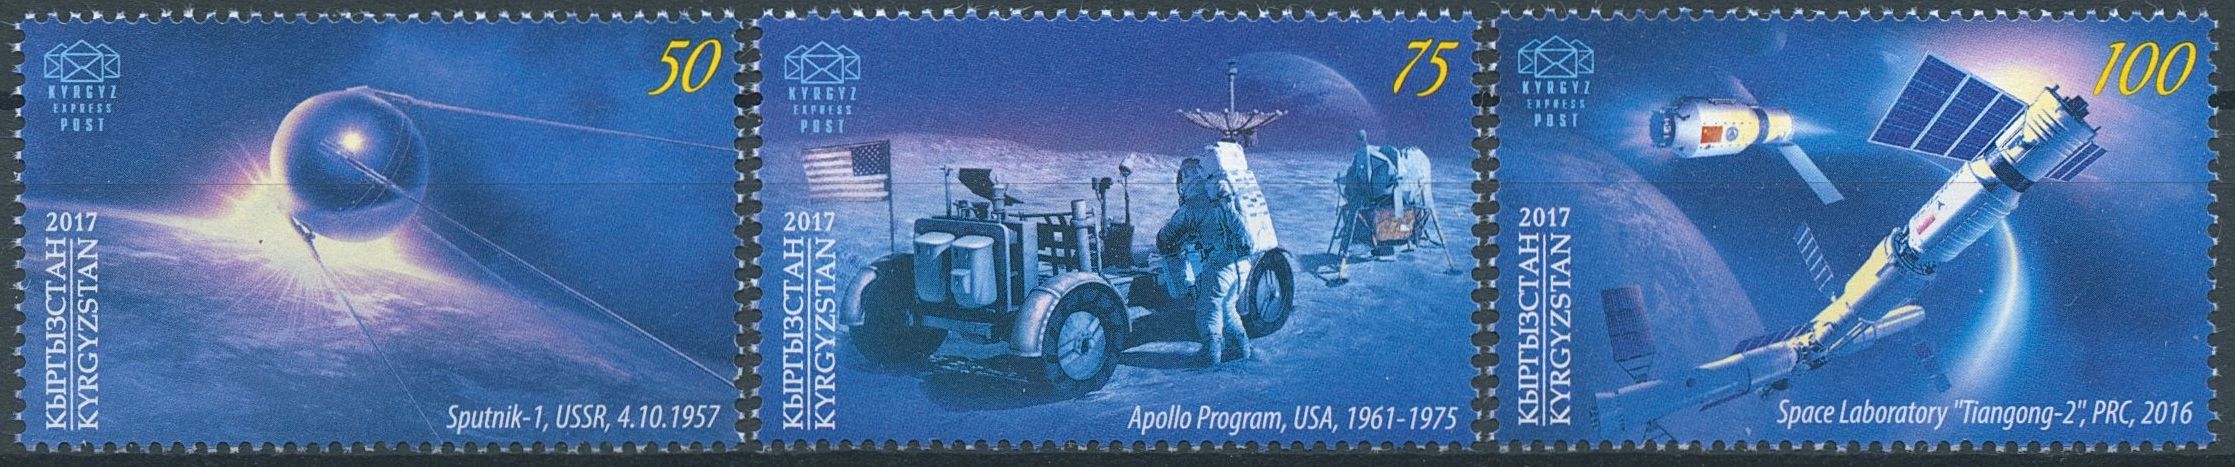 Kyrgyzstan KEP 2017 MNH Space Age 60 Yrs Sputnik 1 Apollo Moon 3v Set Stamps